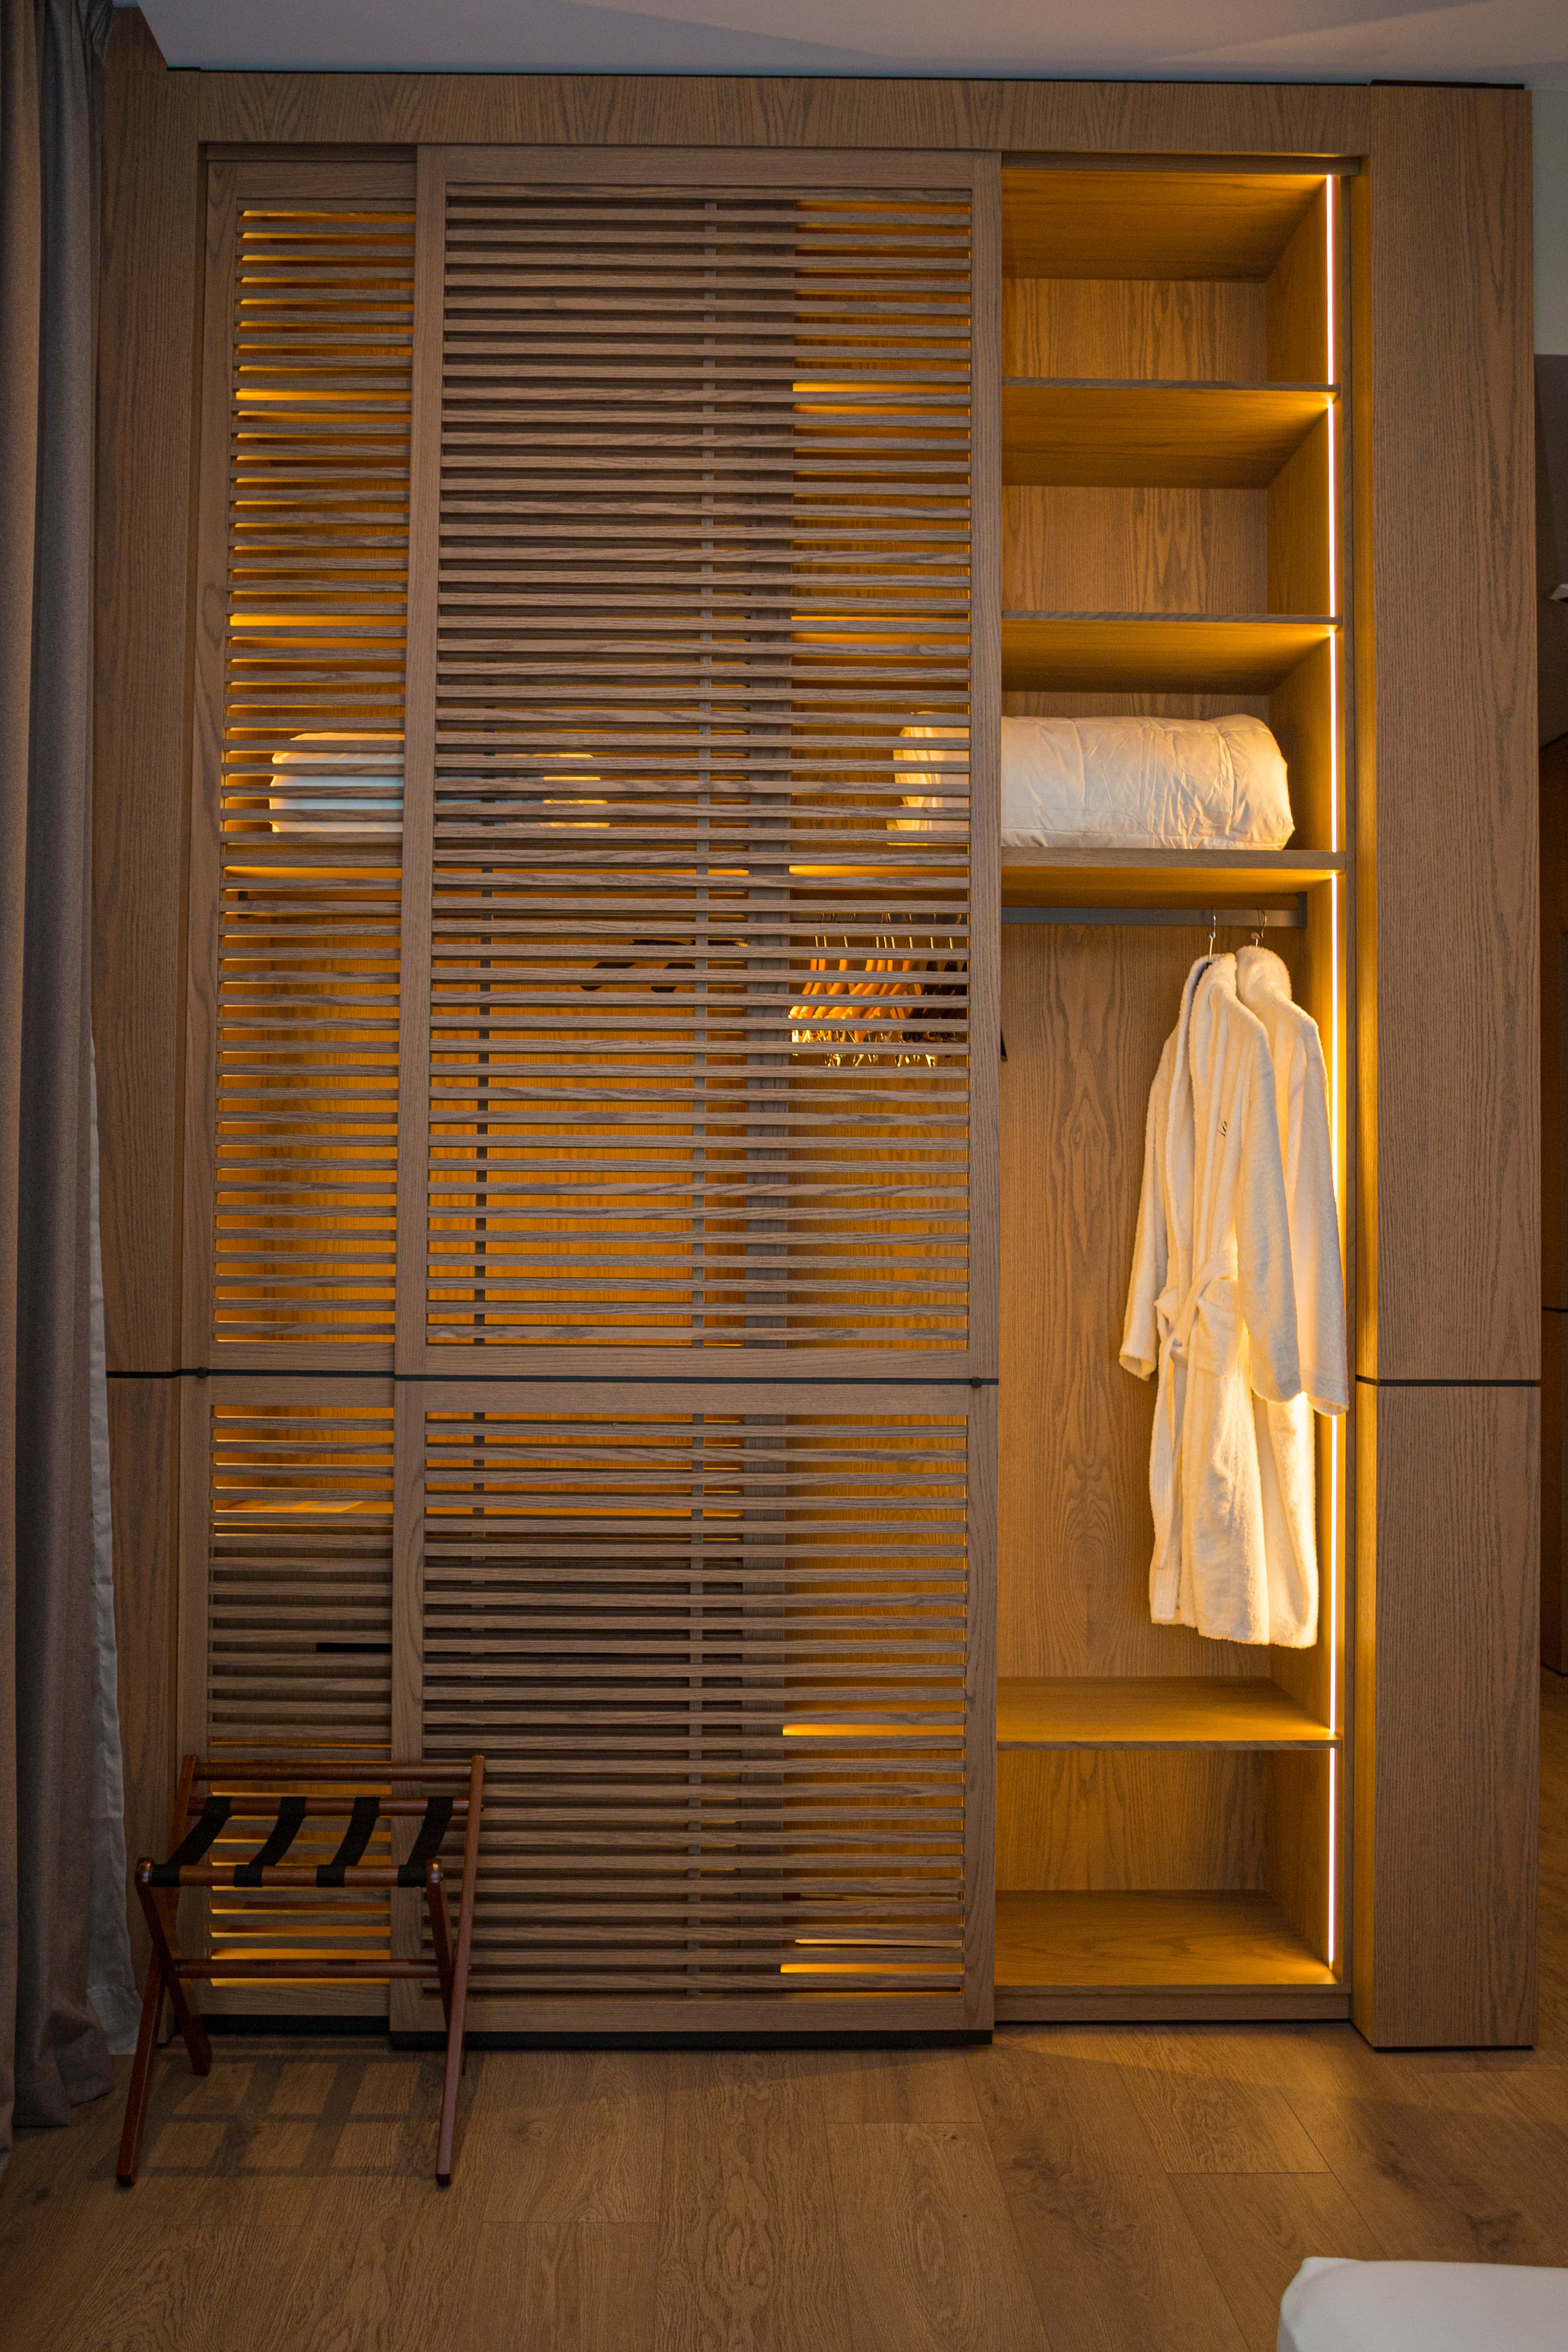 prado_luxury_hotel_room_junior_suite_seaview_jacuzzi_closet_lights